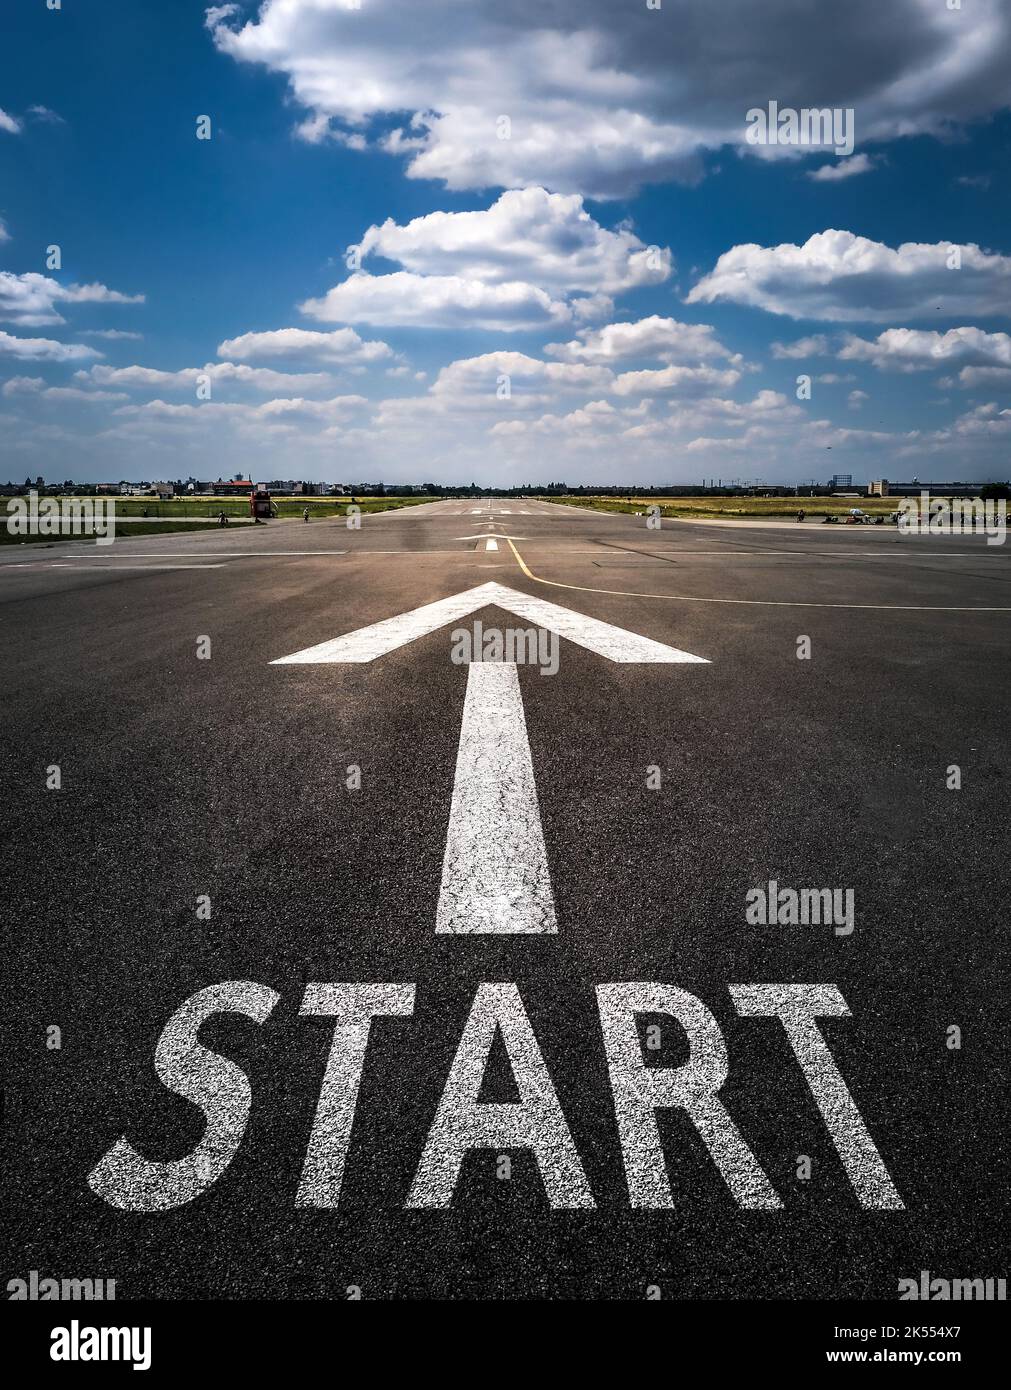 Ligne de départ sur le concept de terrain d'aviation pour la planification d'affaires, la stratégie et le défi ou le cheminement de carrière, les possibilités et le changement Banque D'Images